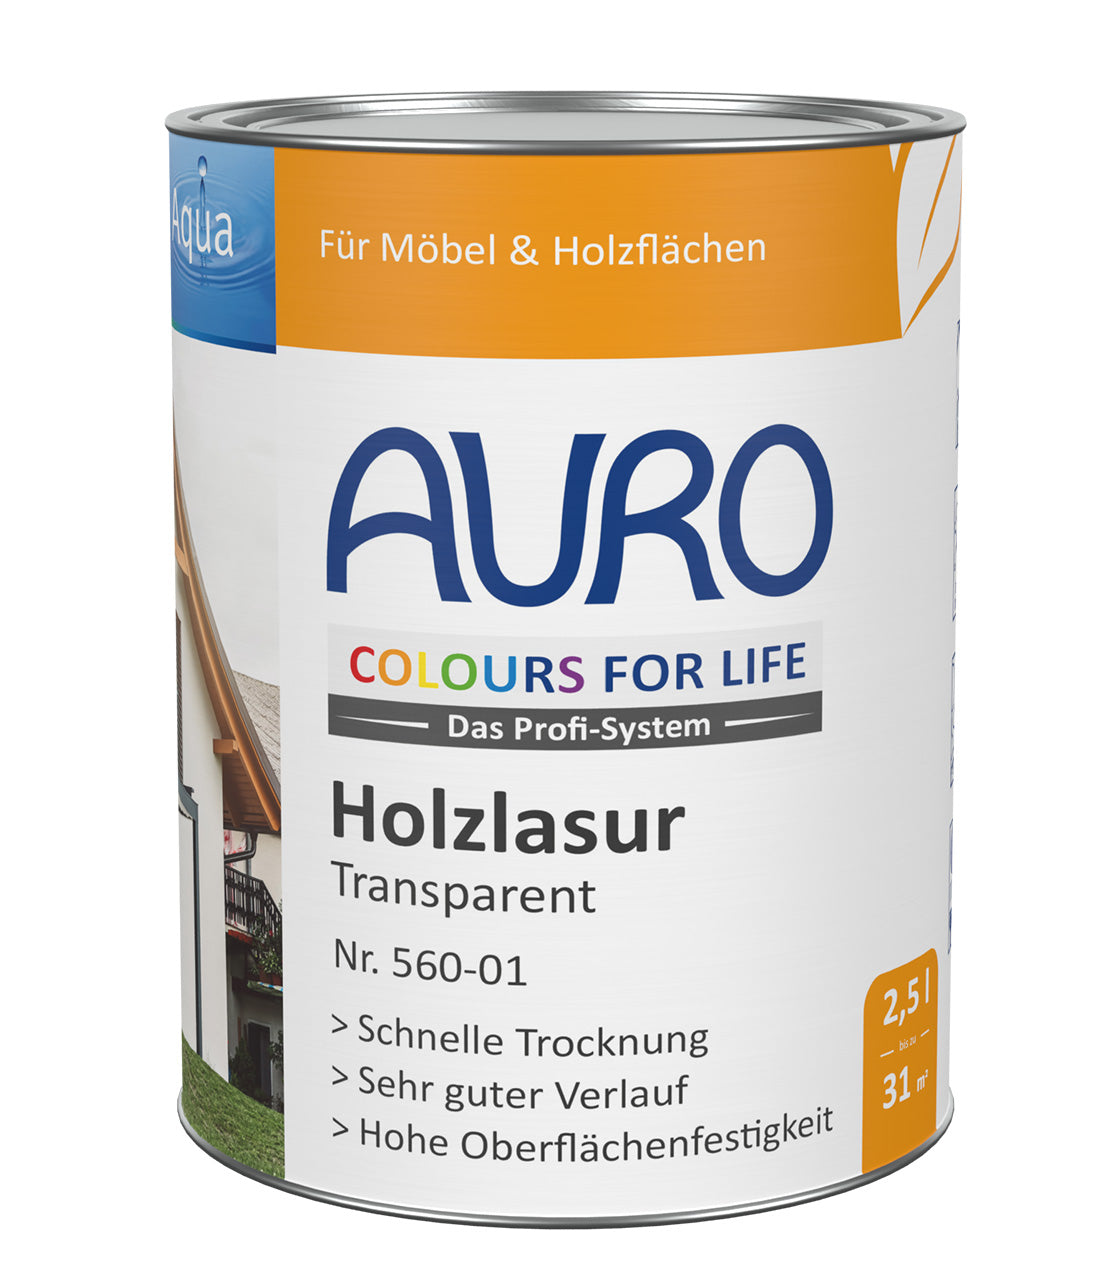 AURO COLOURS FOR LIFE Holzlasur, transparent Nr. 560-01